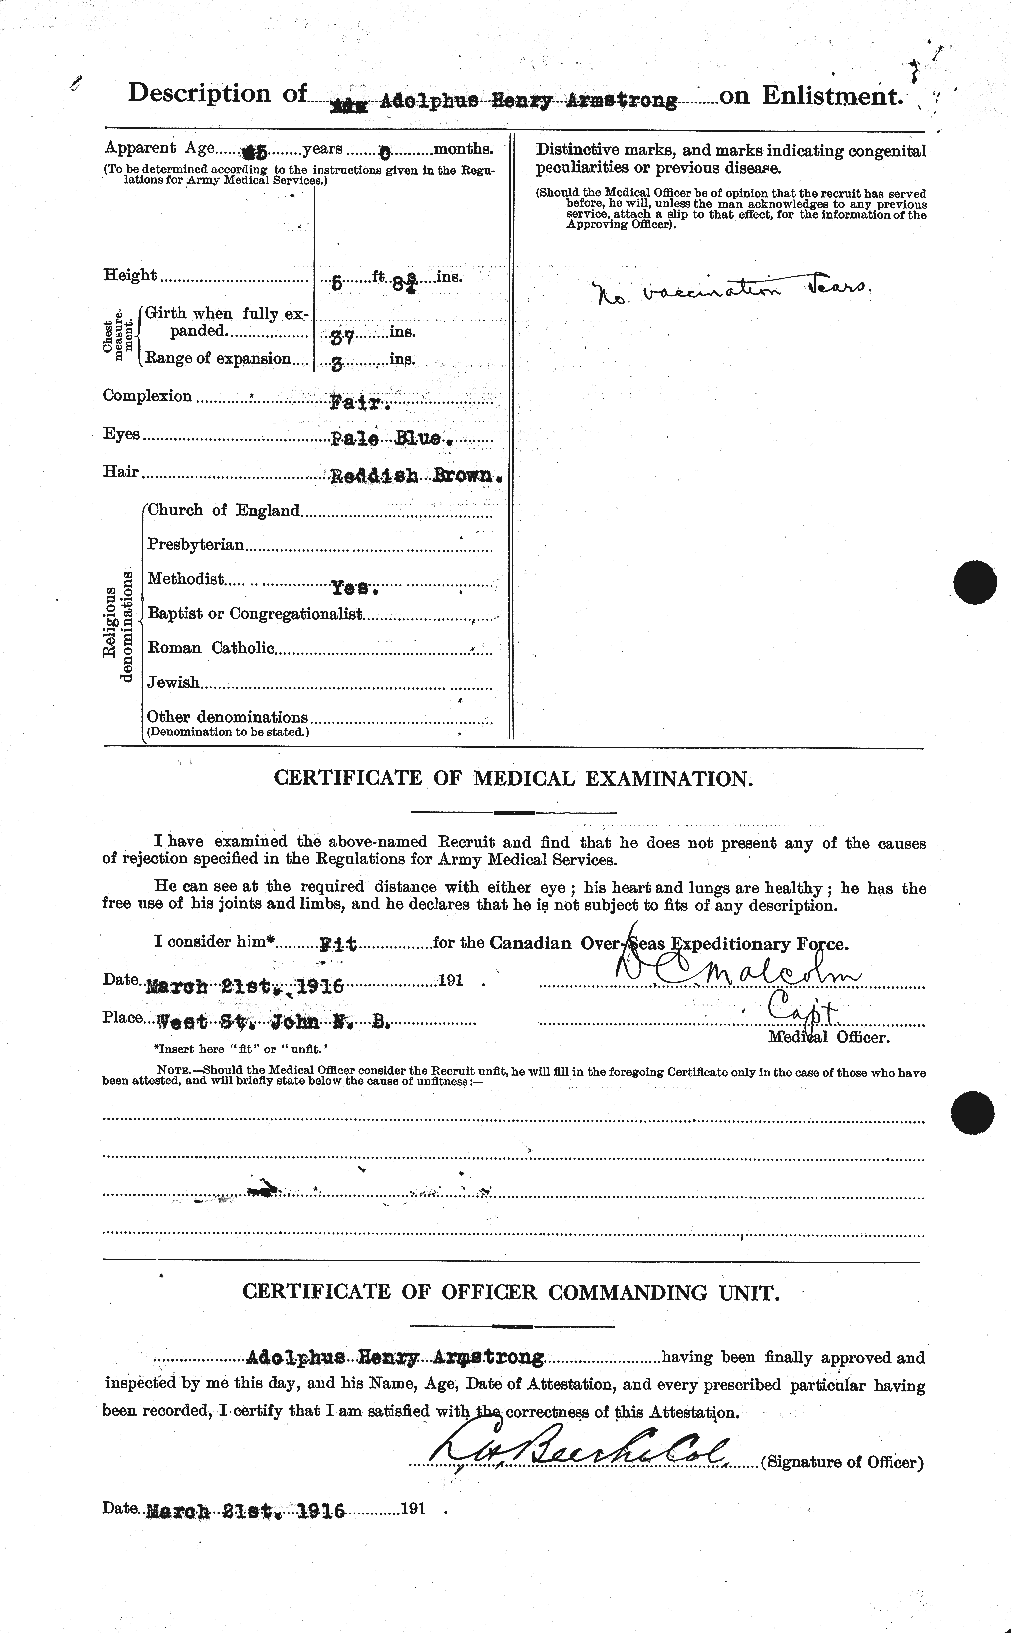 Dossiers du Personnel de la Première Guerre mondiale - CEC 214001b